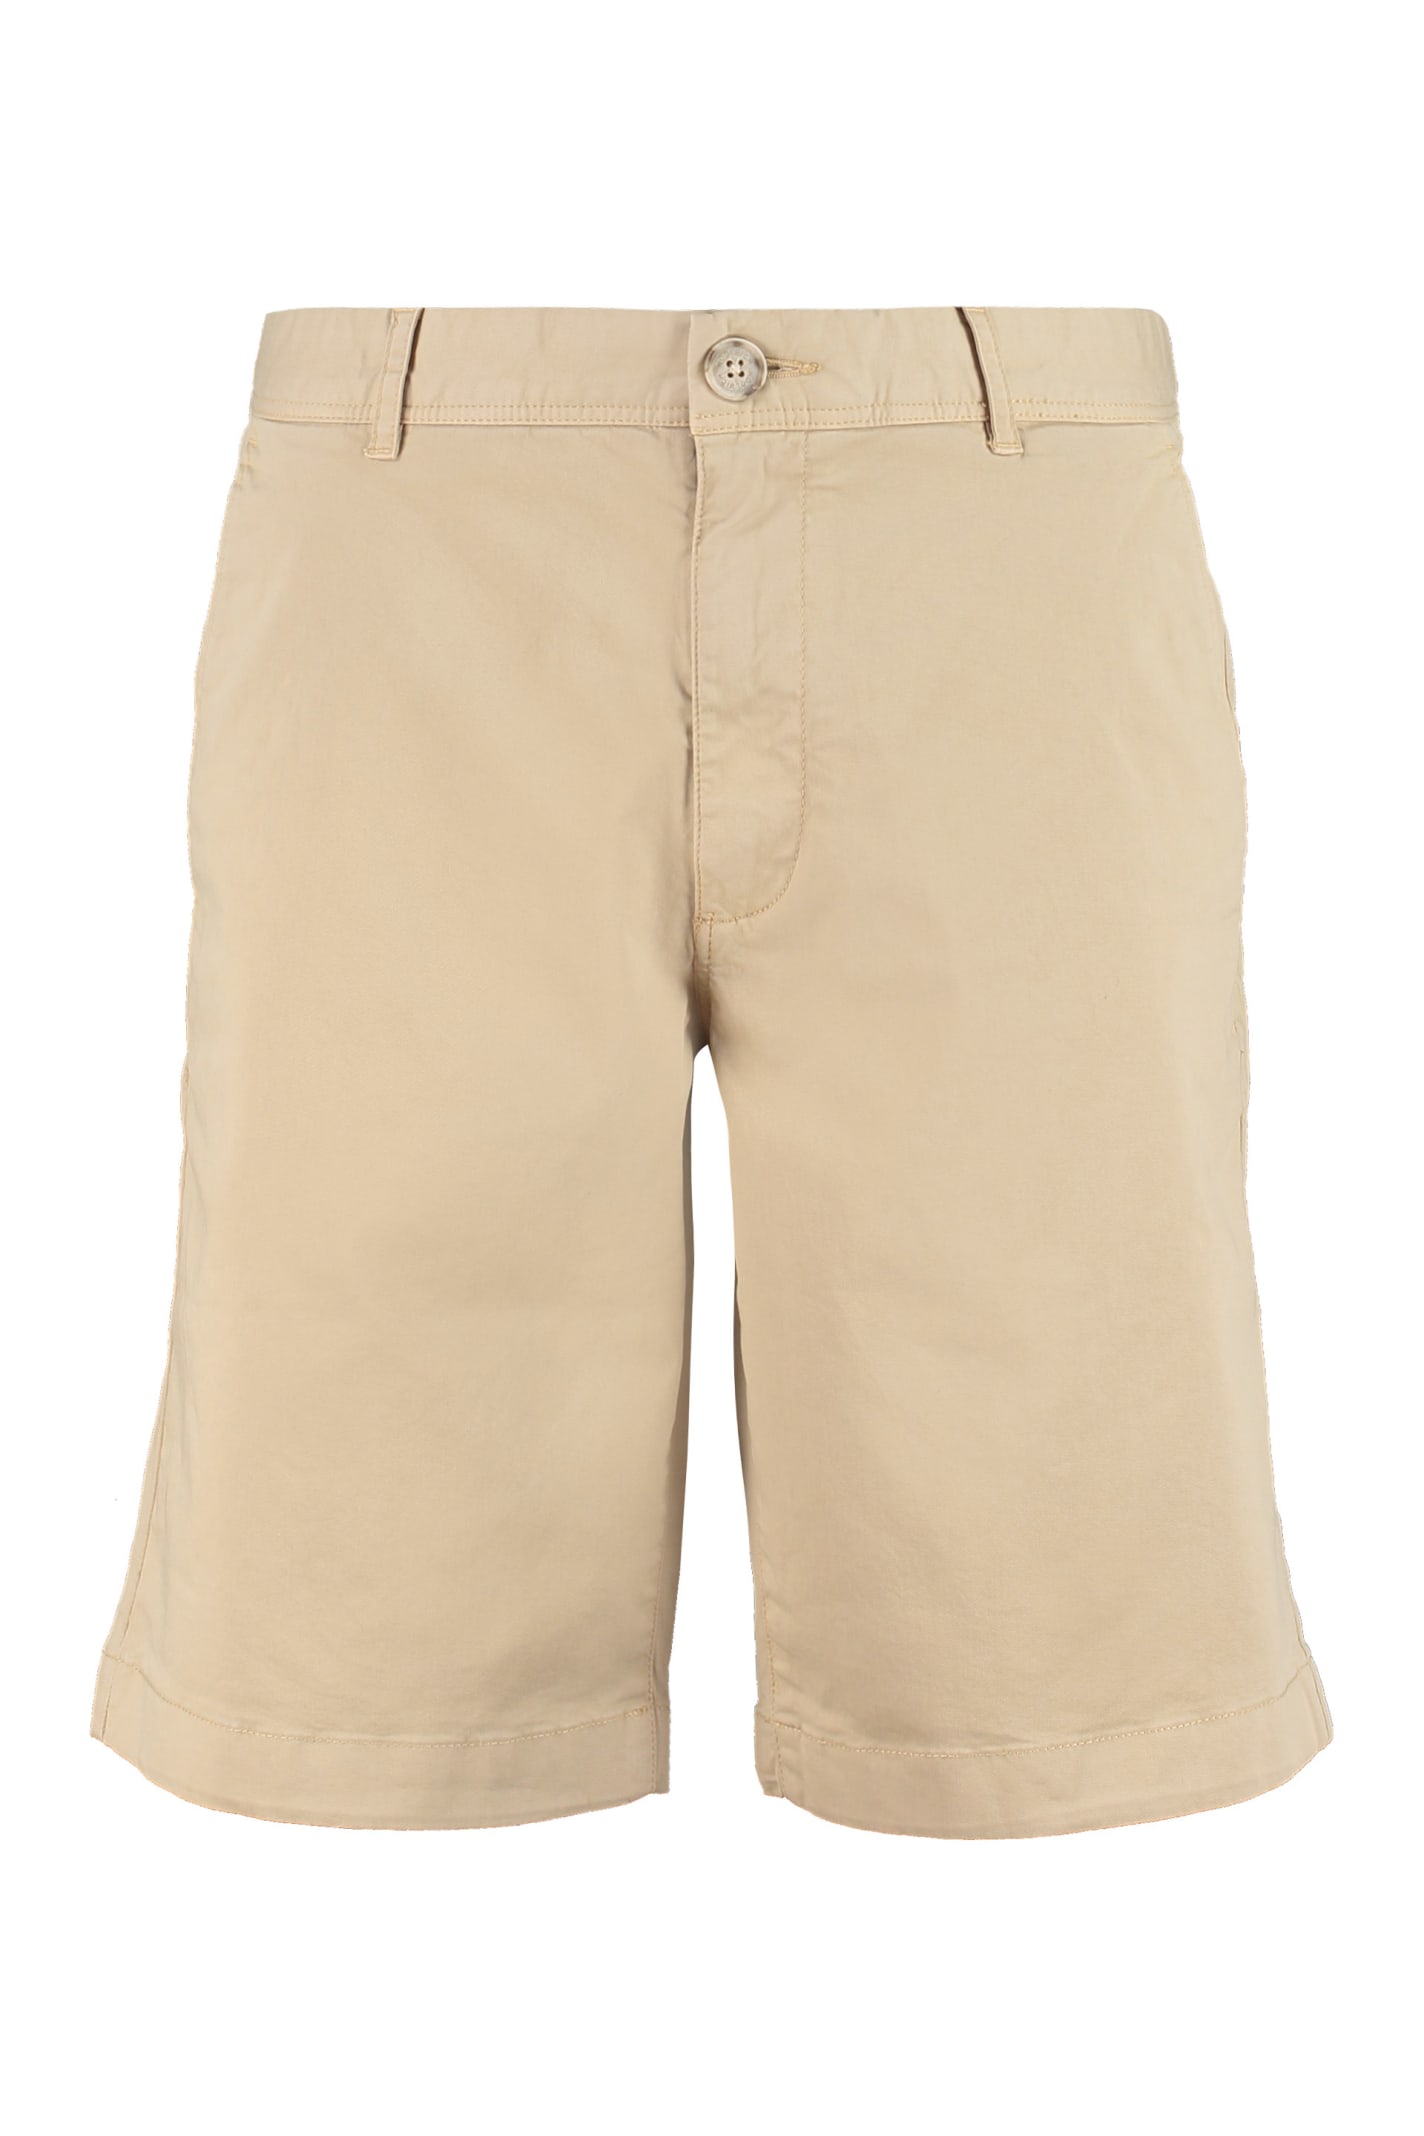 Woolrich Cotton Bermuda Shorts